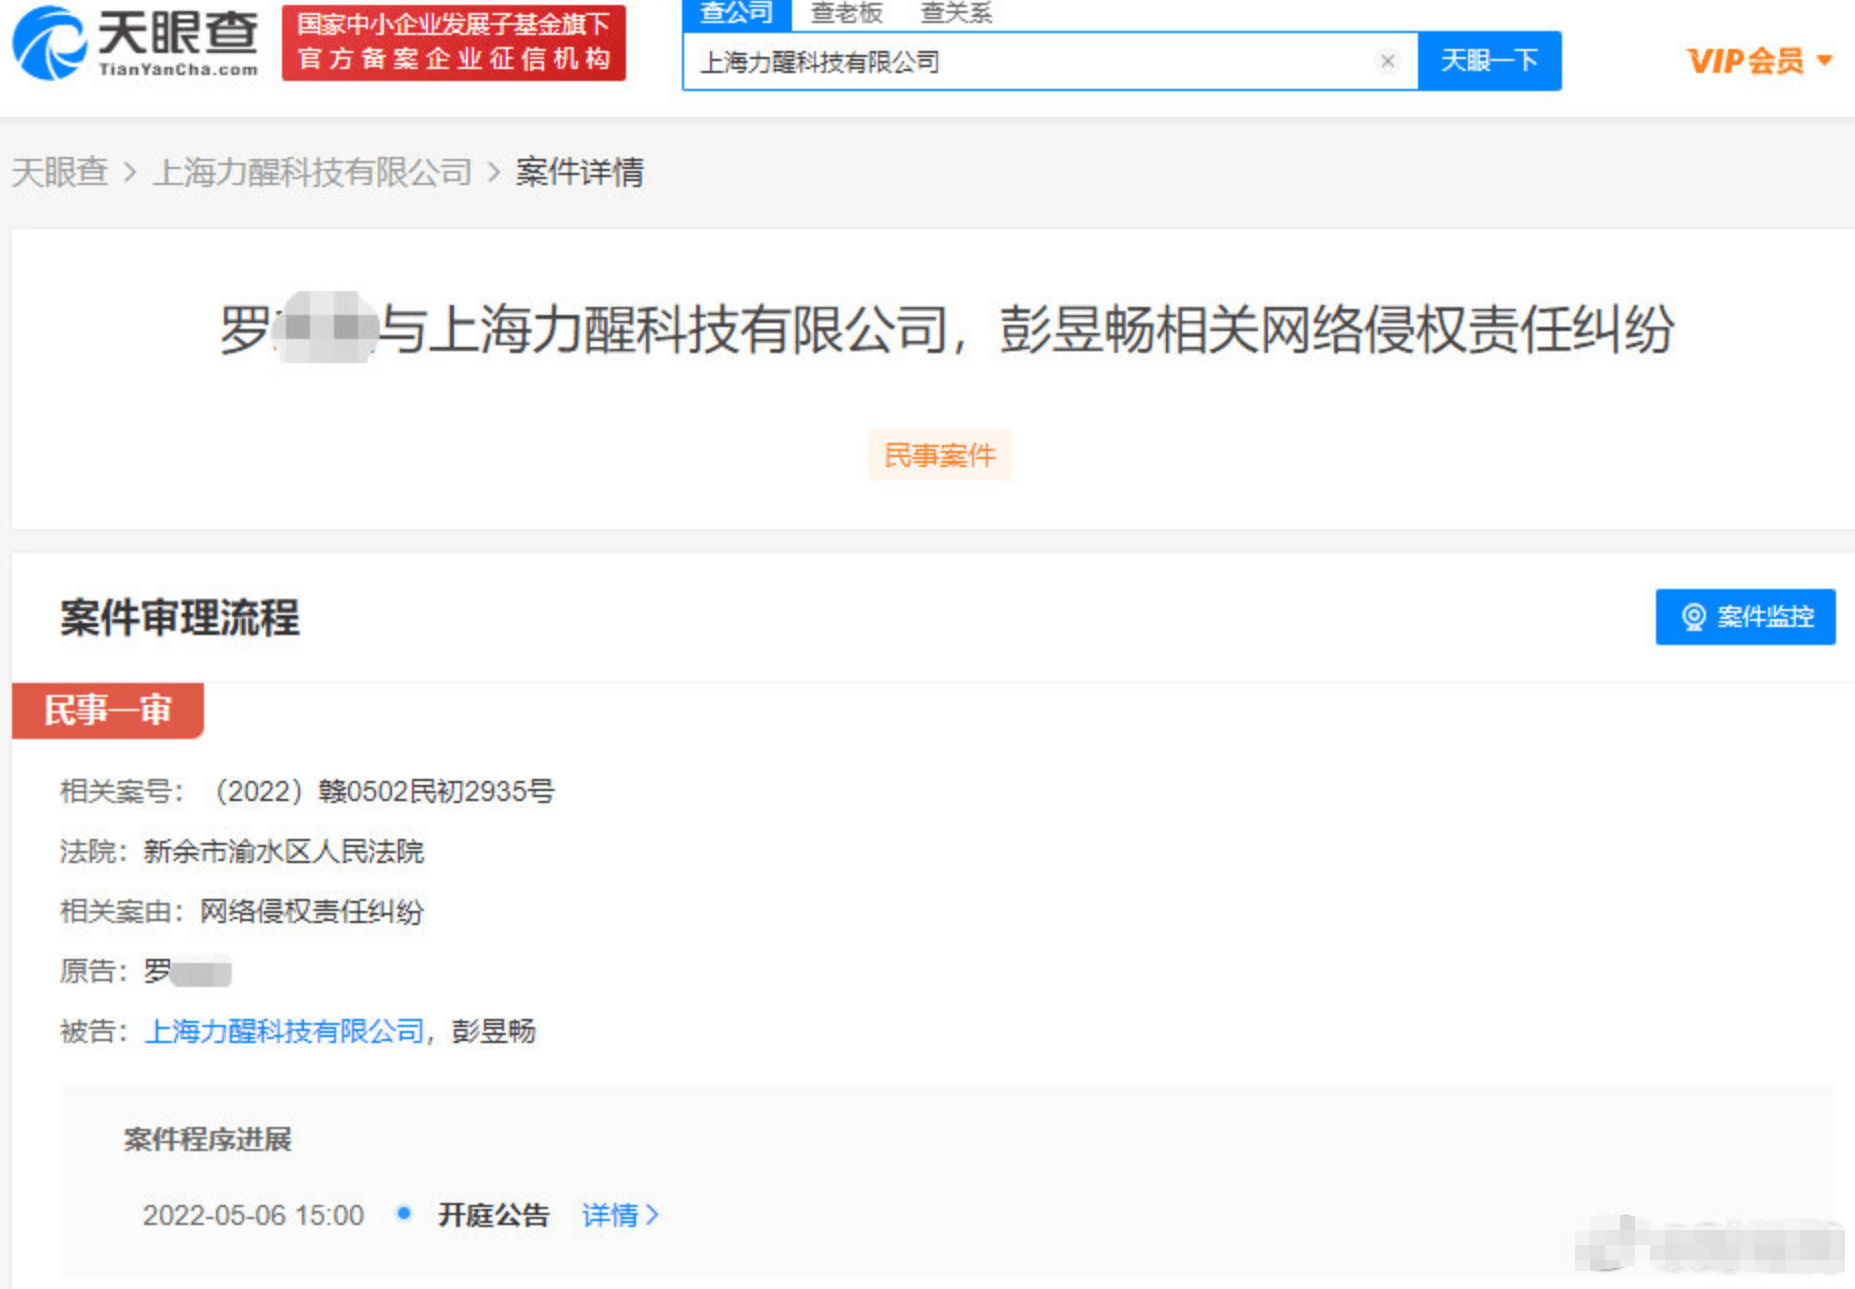 上海力醒科技有限公司新增开庭公告 被告为该公司及彭昱畅